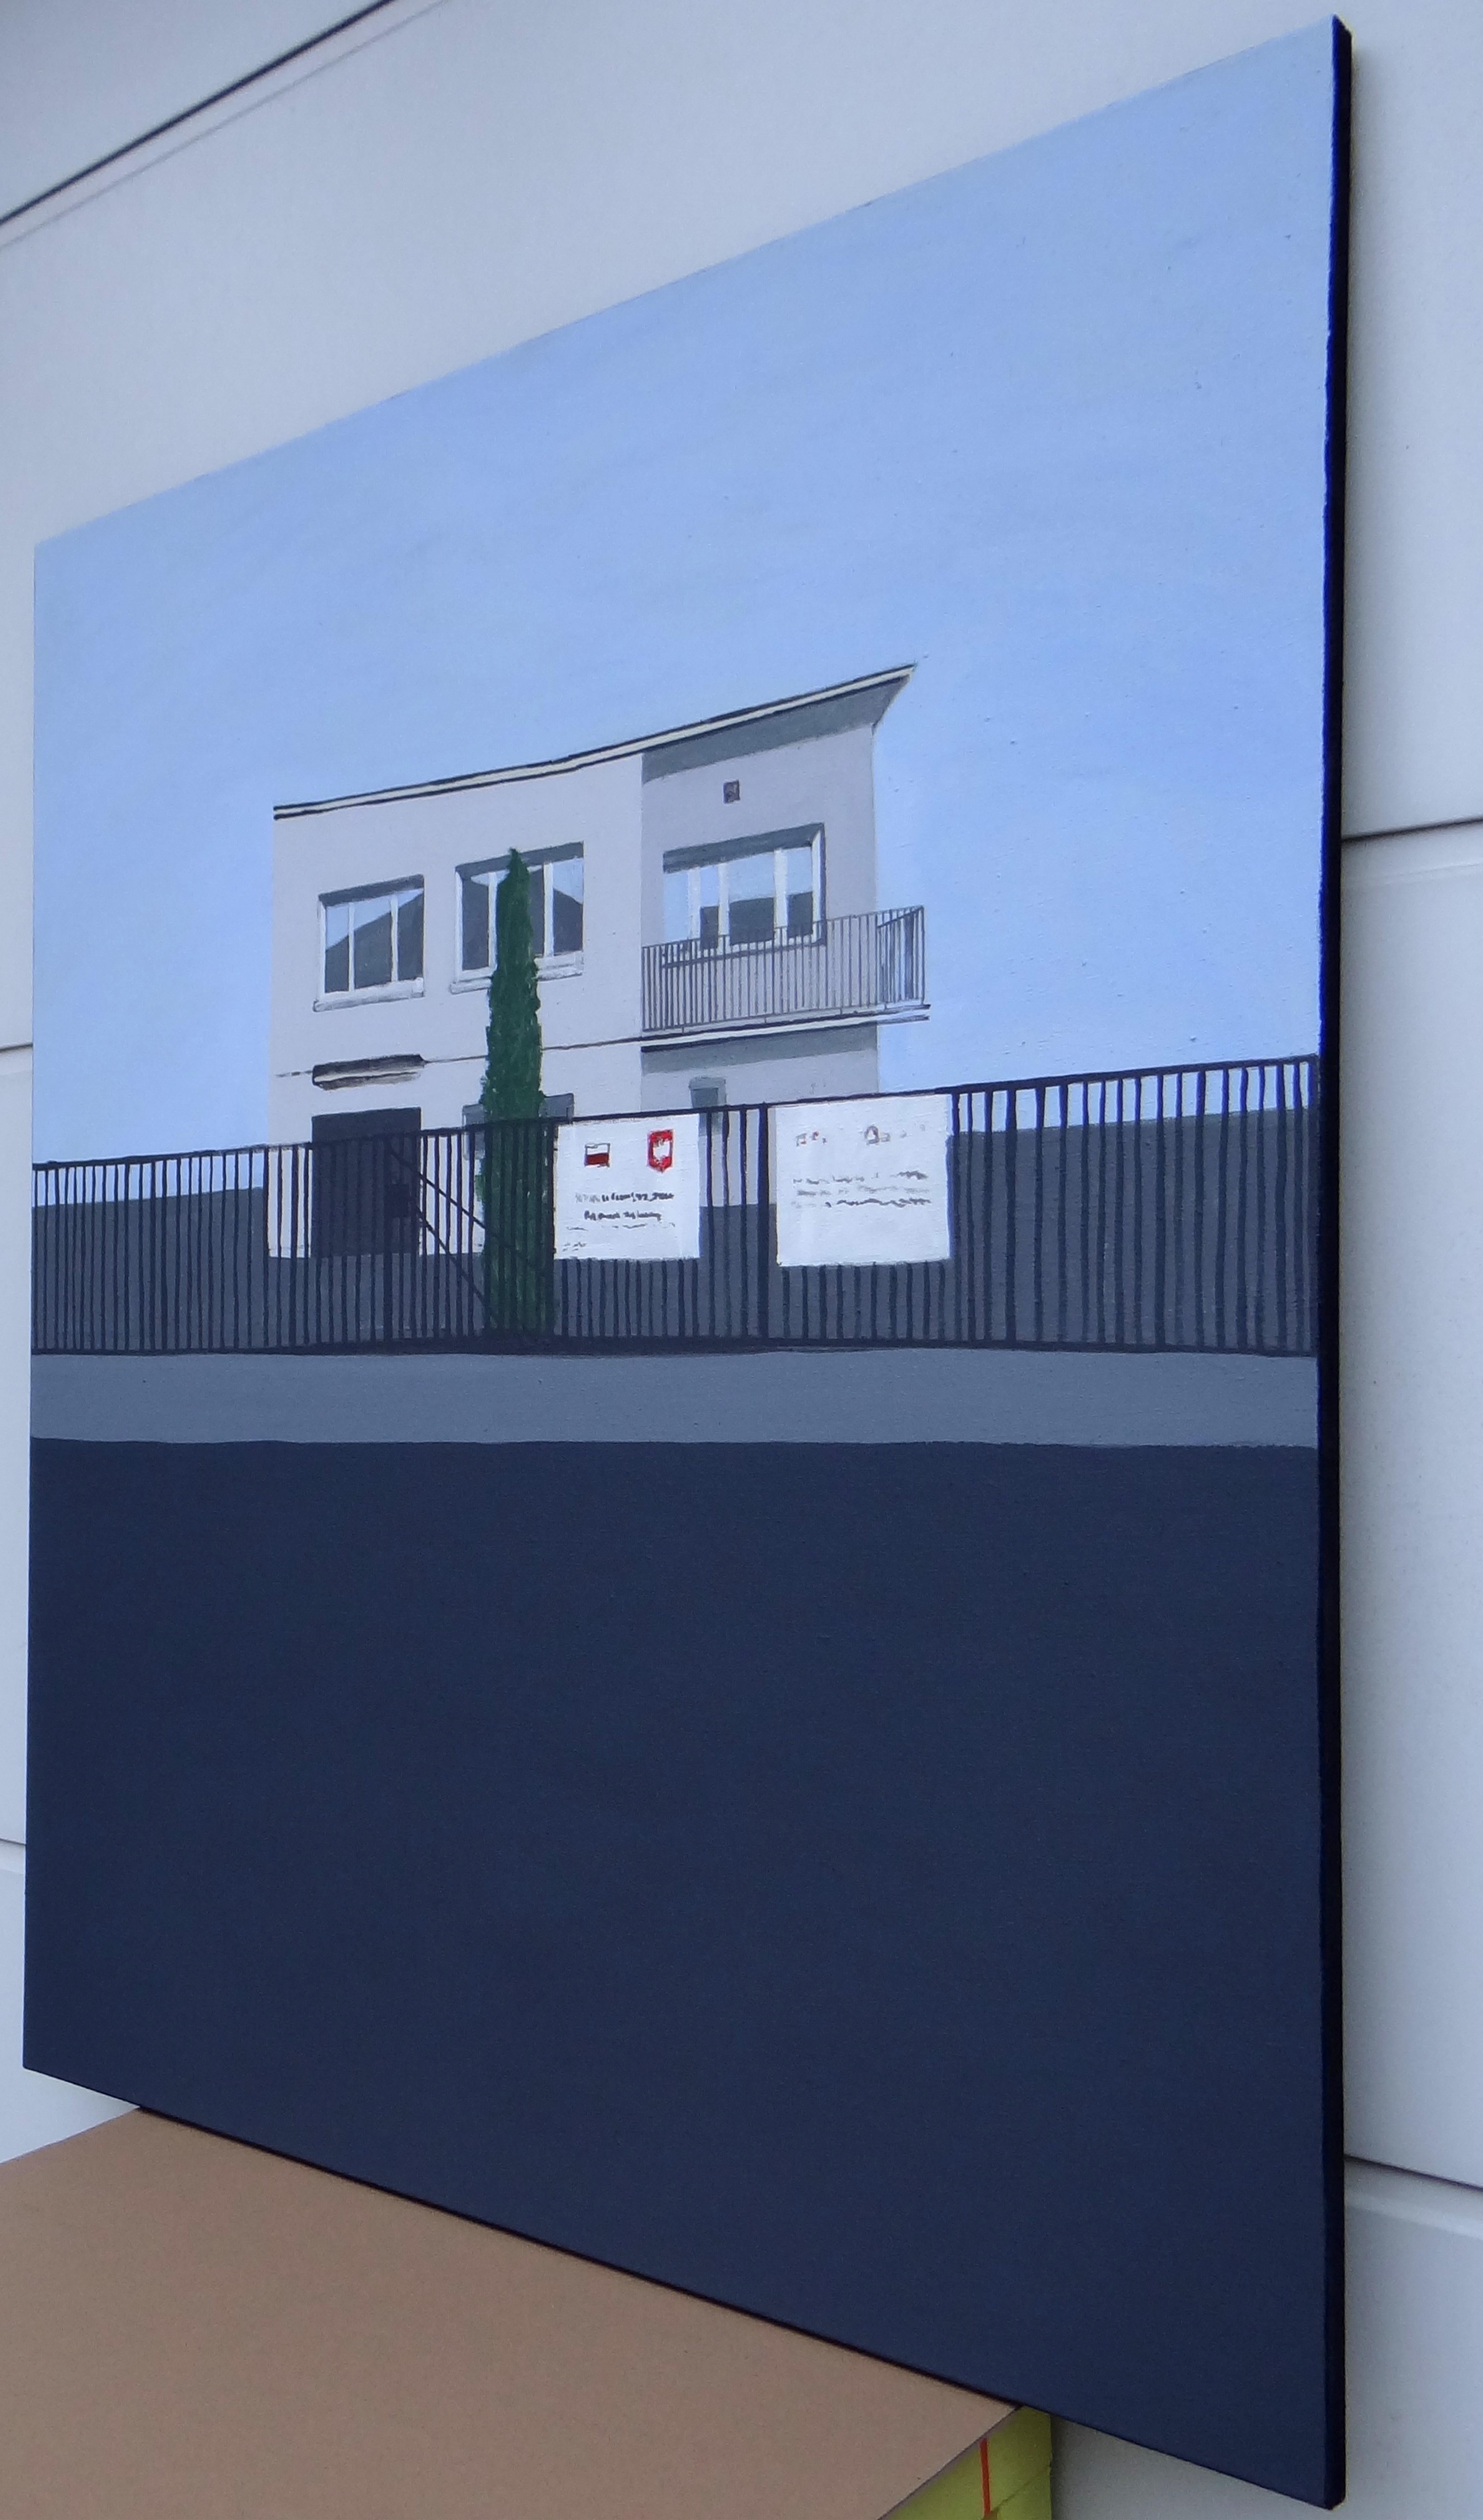 VILLA PLUS - Architecture contemporaine expressive et minimaliste  Peinture - Painting de Joanna Mrozowska